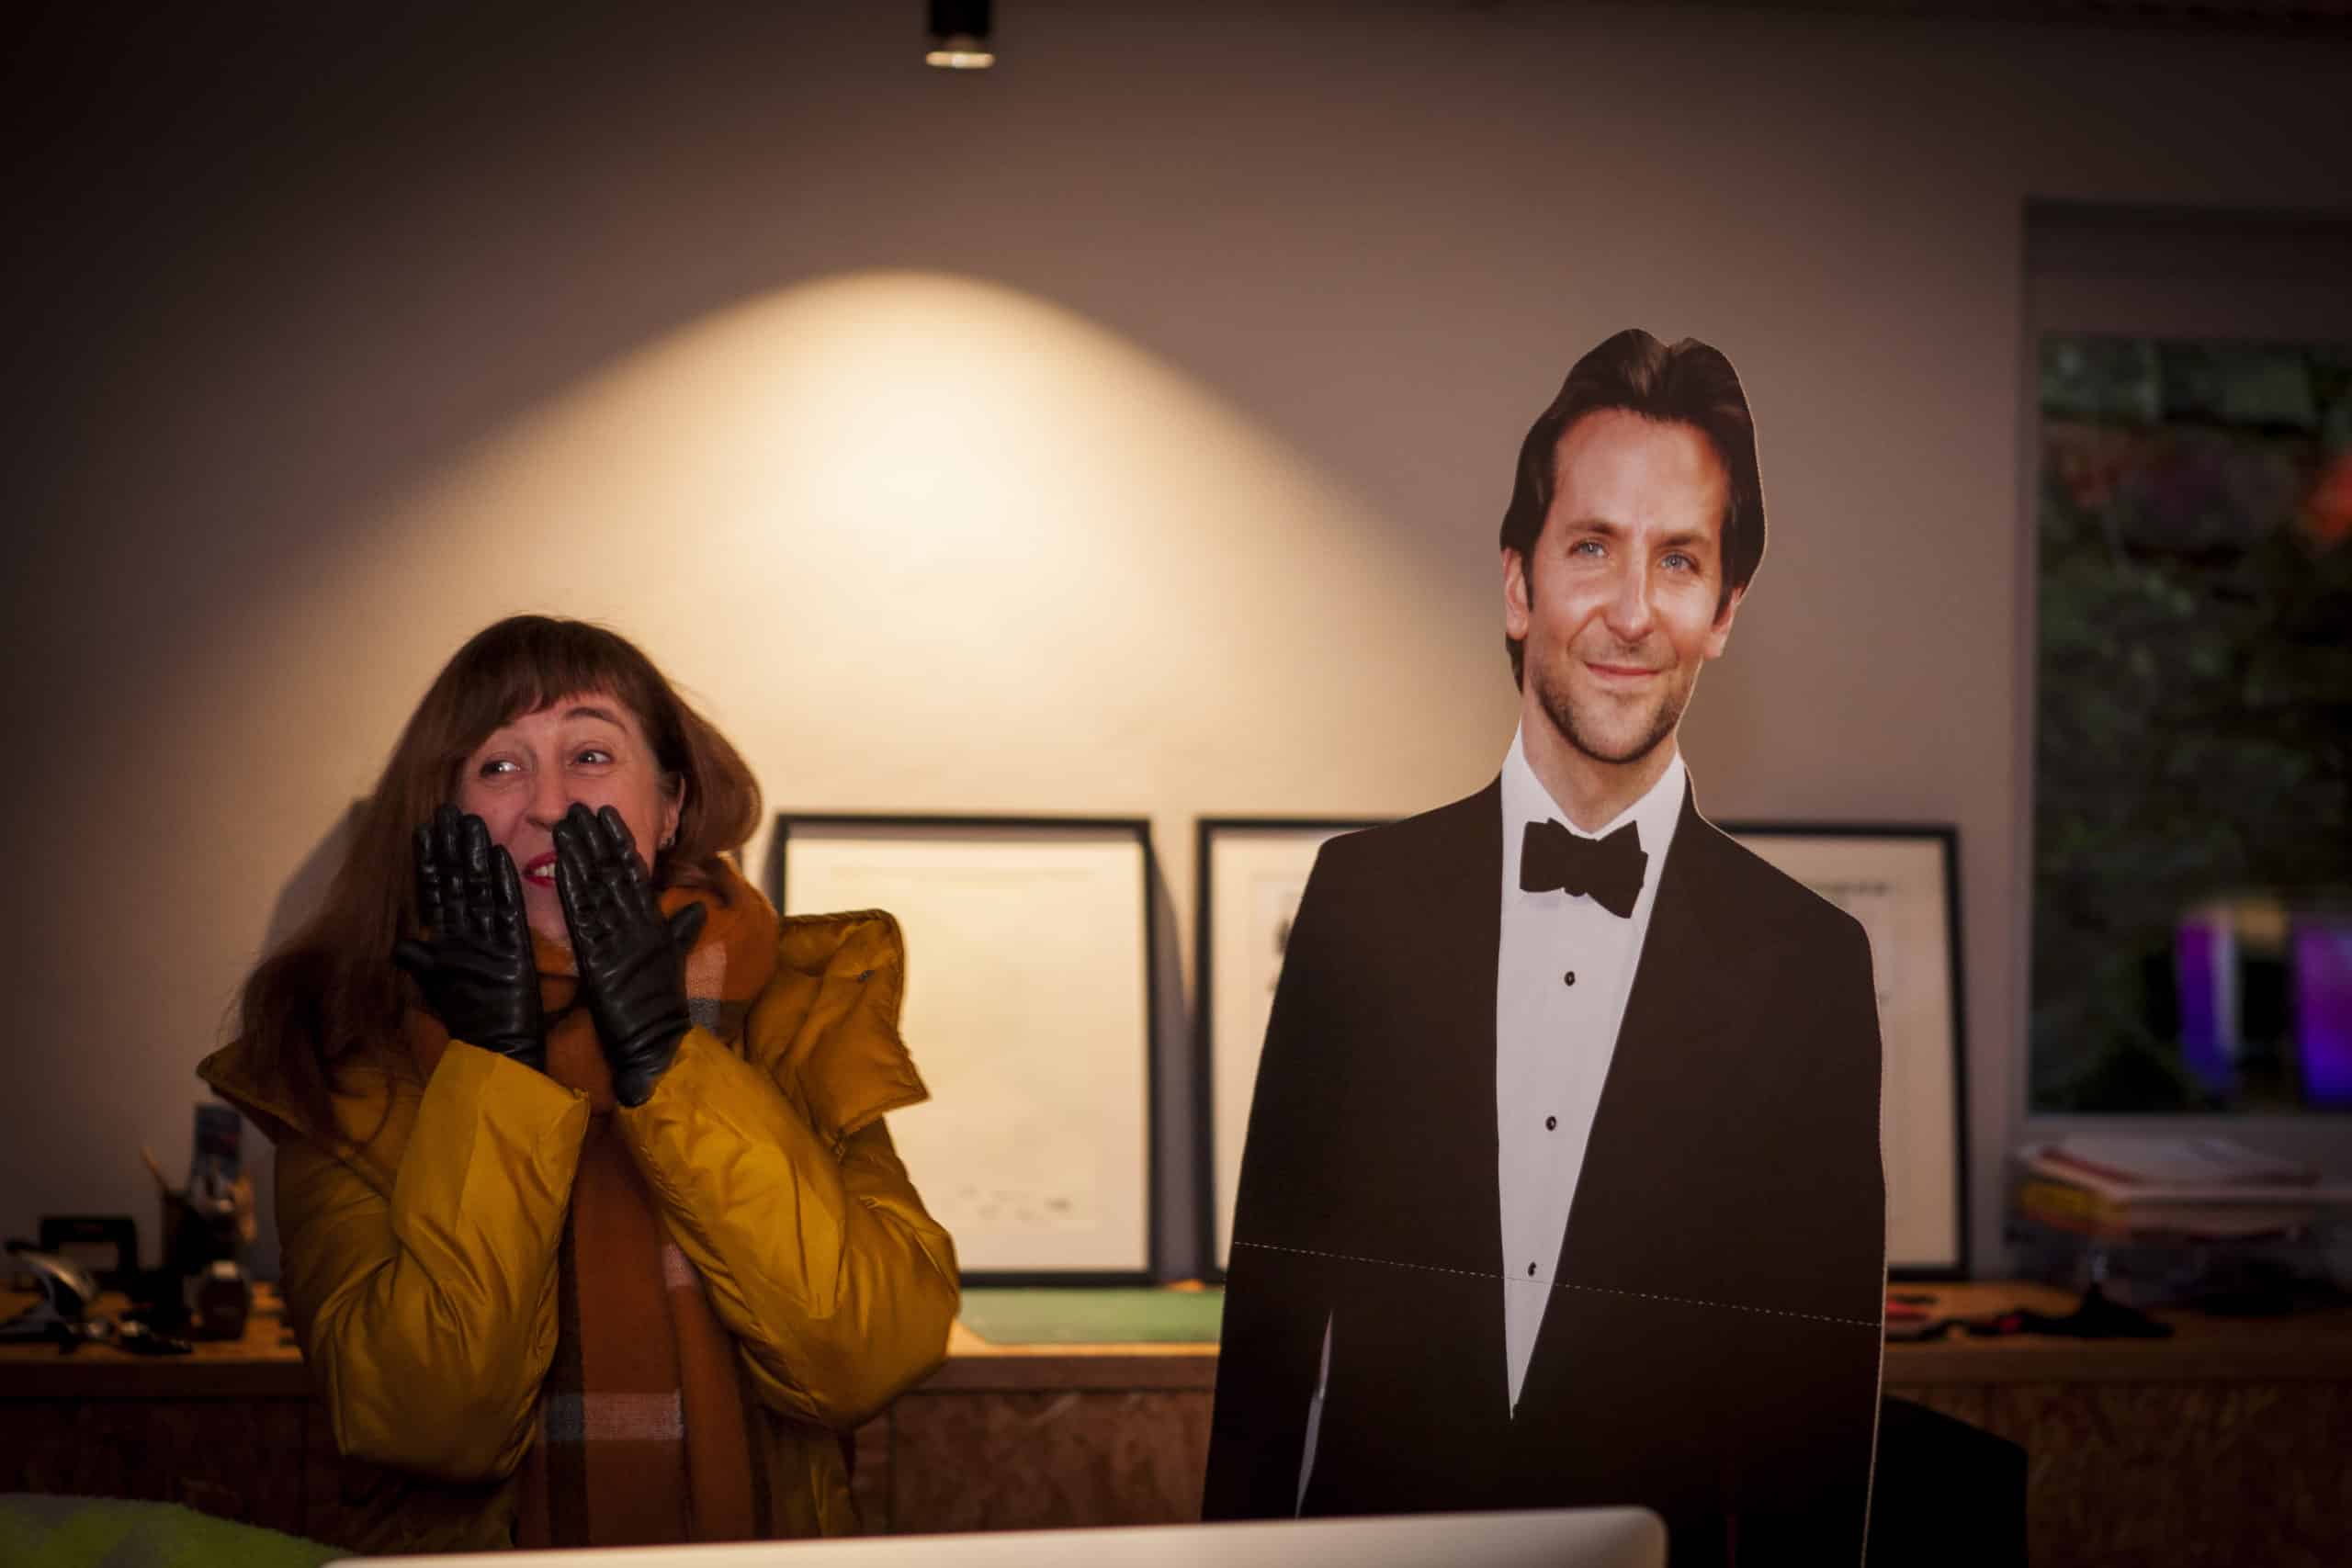 Une femme portant une veste jaune et une écharpe marron, debout à côté d'un carton découpé d'un homme en smoking noir et noeud papillon (Bradley Cooper), dans un bureau éclairé avec des cadres en arrière-plan. La femme a l'air surpris ou excité, couvrant son visage avec des gants noirs, ajoutant une touche amusante à la scène.